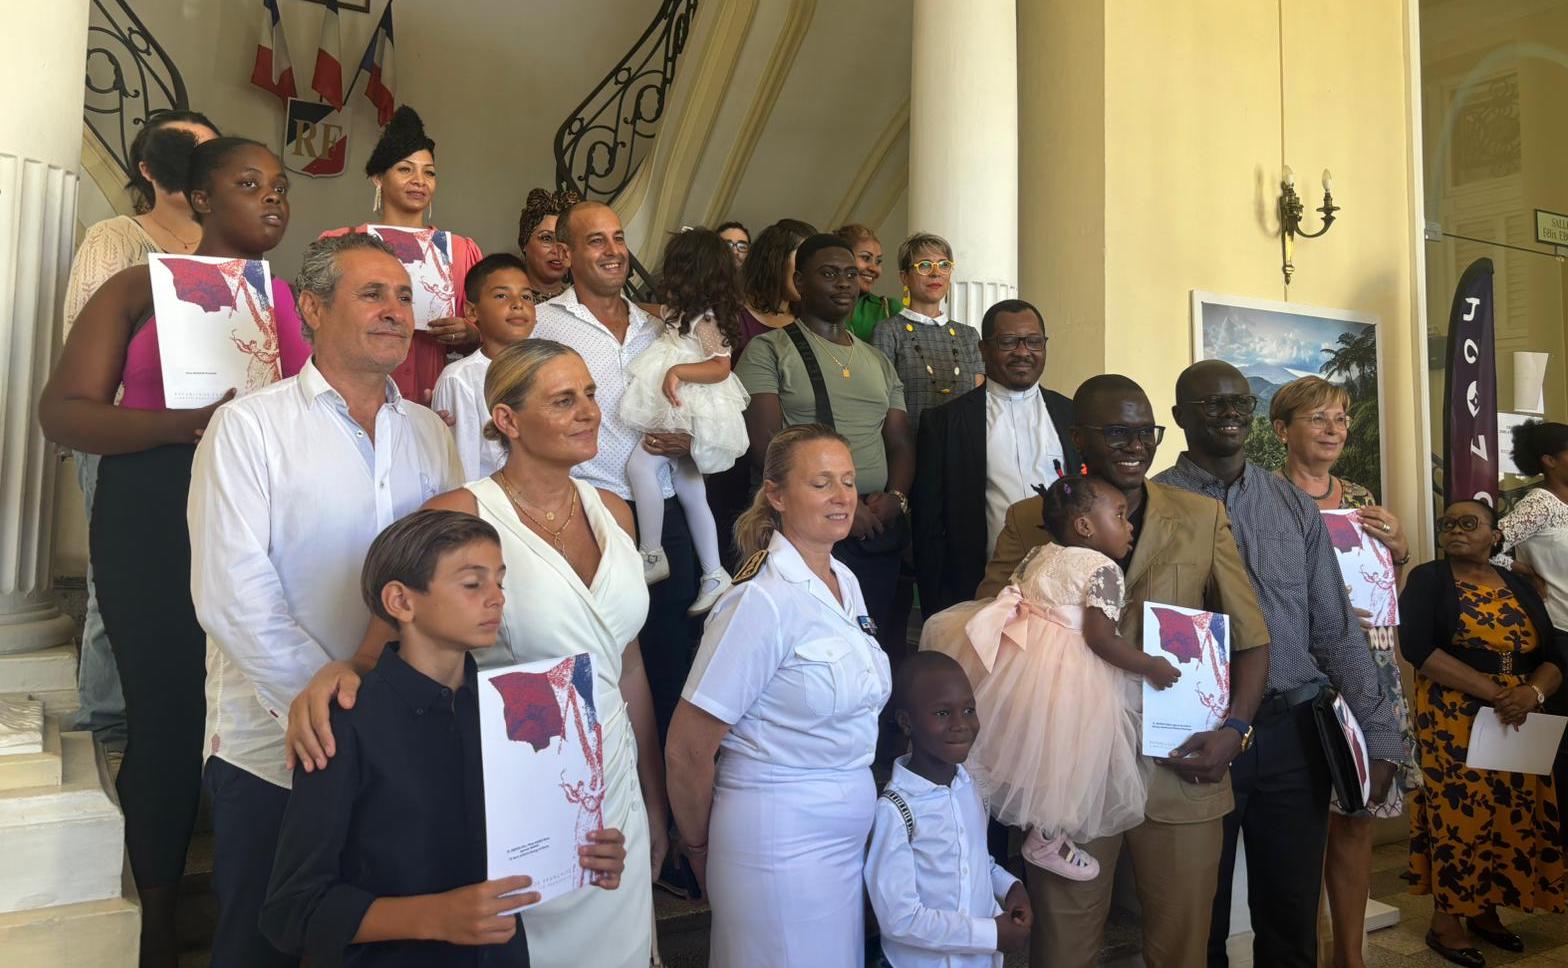     83 nouveaux citoyens français naturalisés en Martinique 

